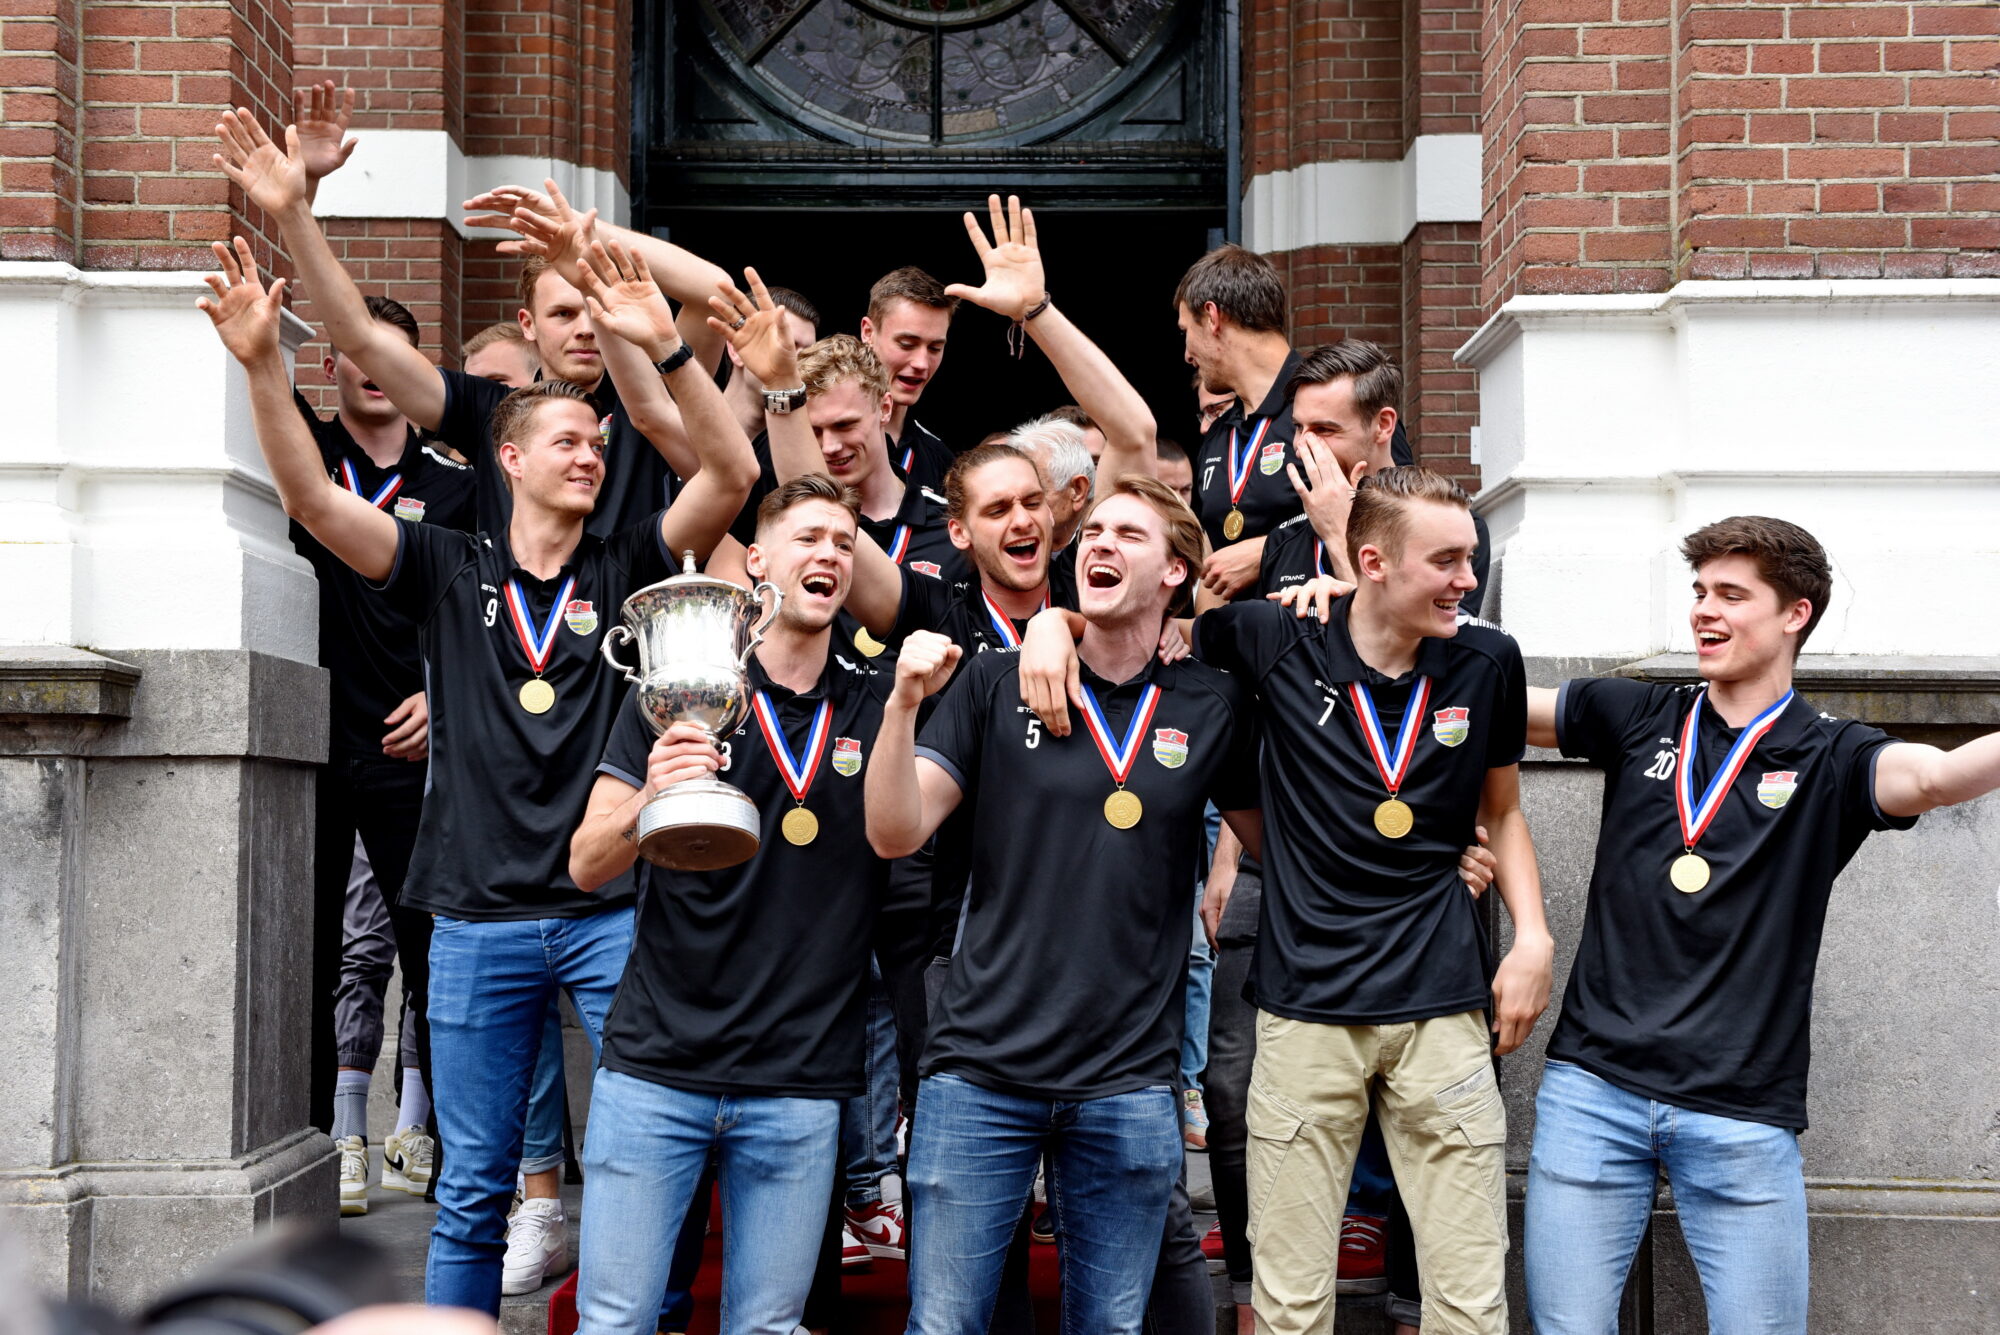 Volleybalkampioen Dynamo krijgt huldiging op Raadhuisplein in Apeldoorn